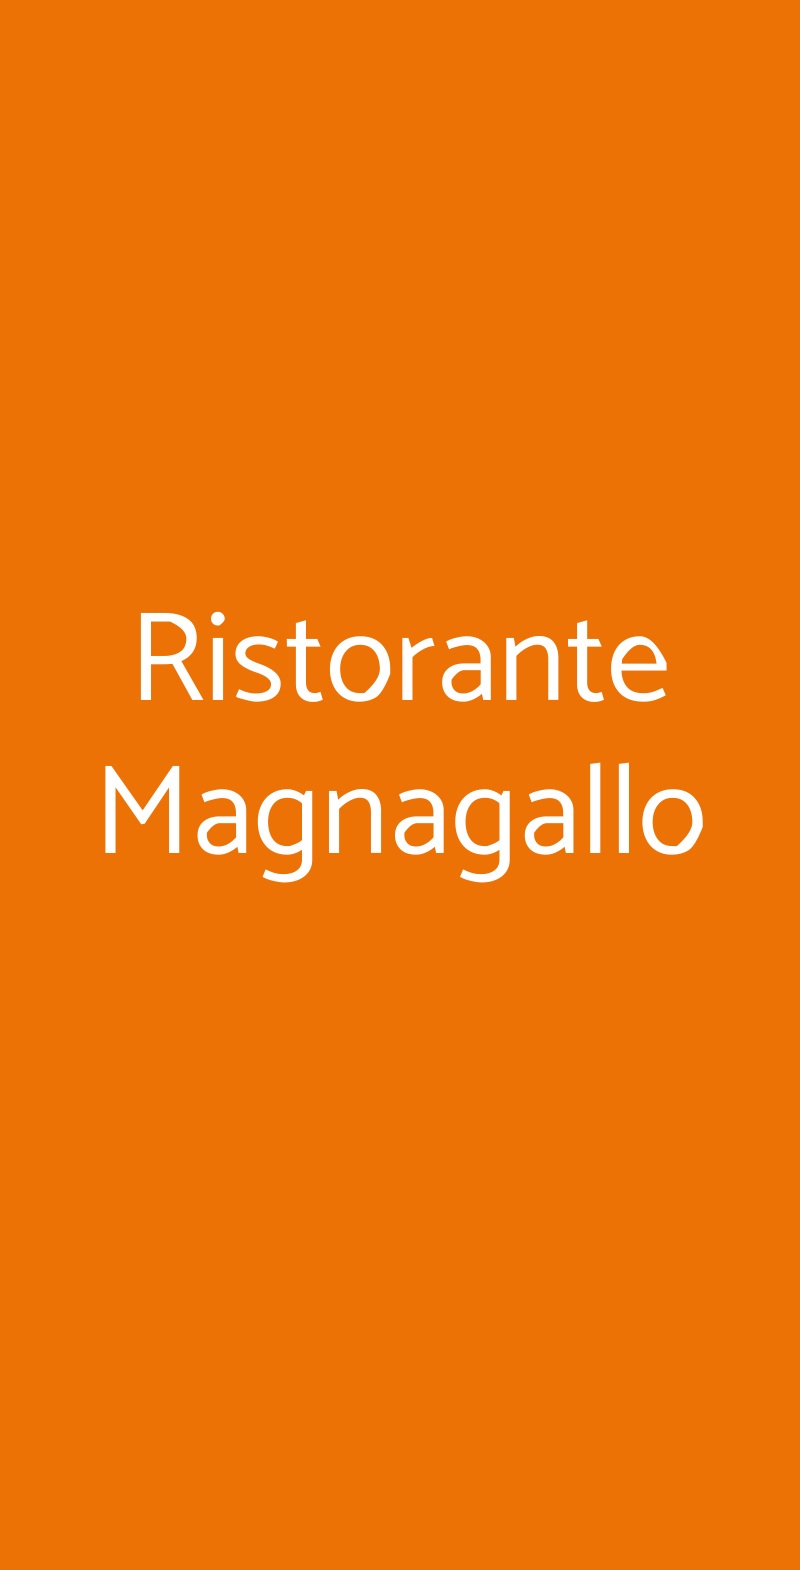 Ristorante Magnagallo Campogalliano menù 1 pagina